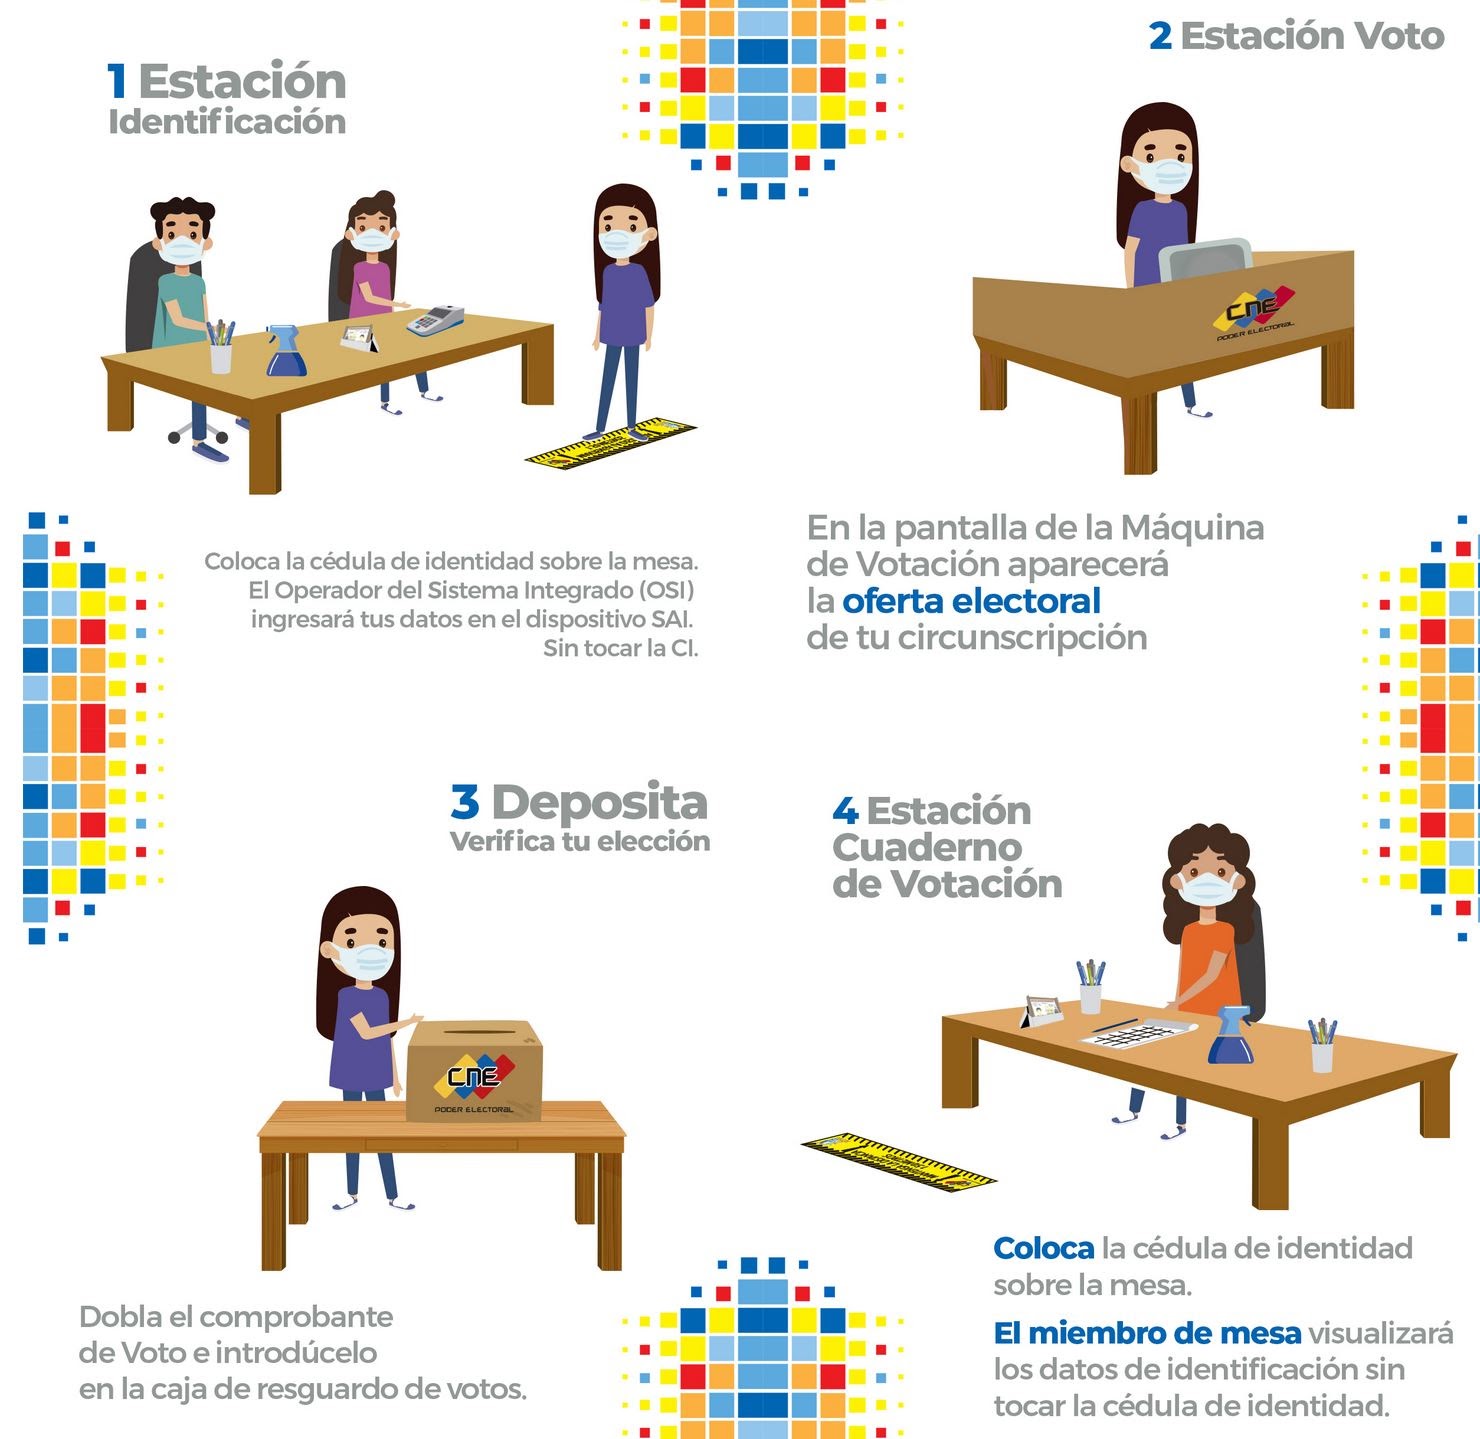 Venezuela Electoral Council 